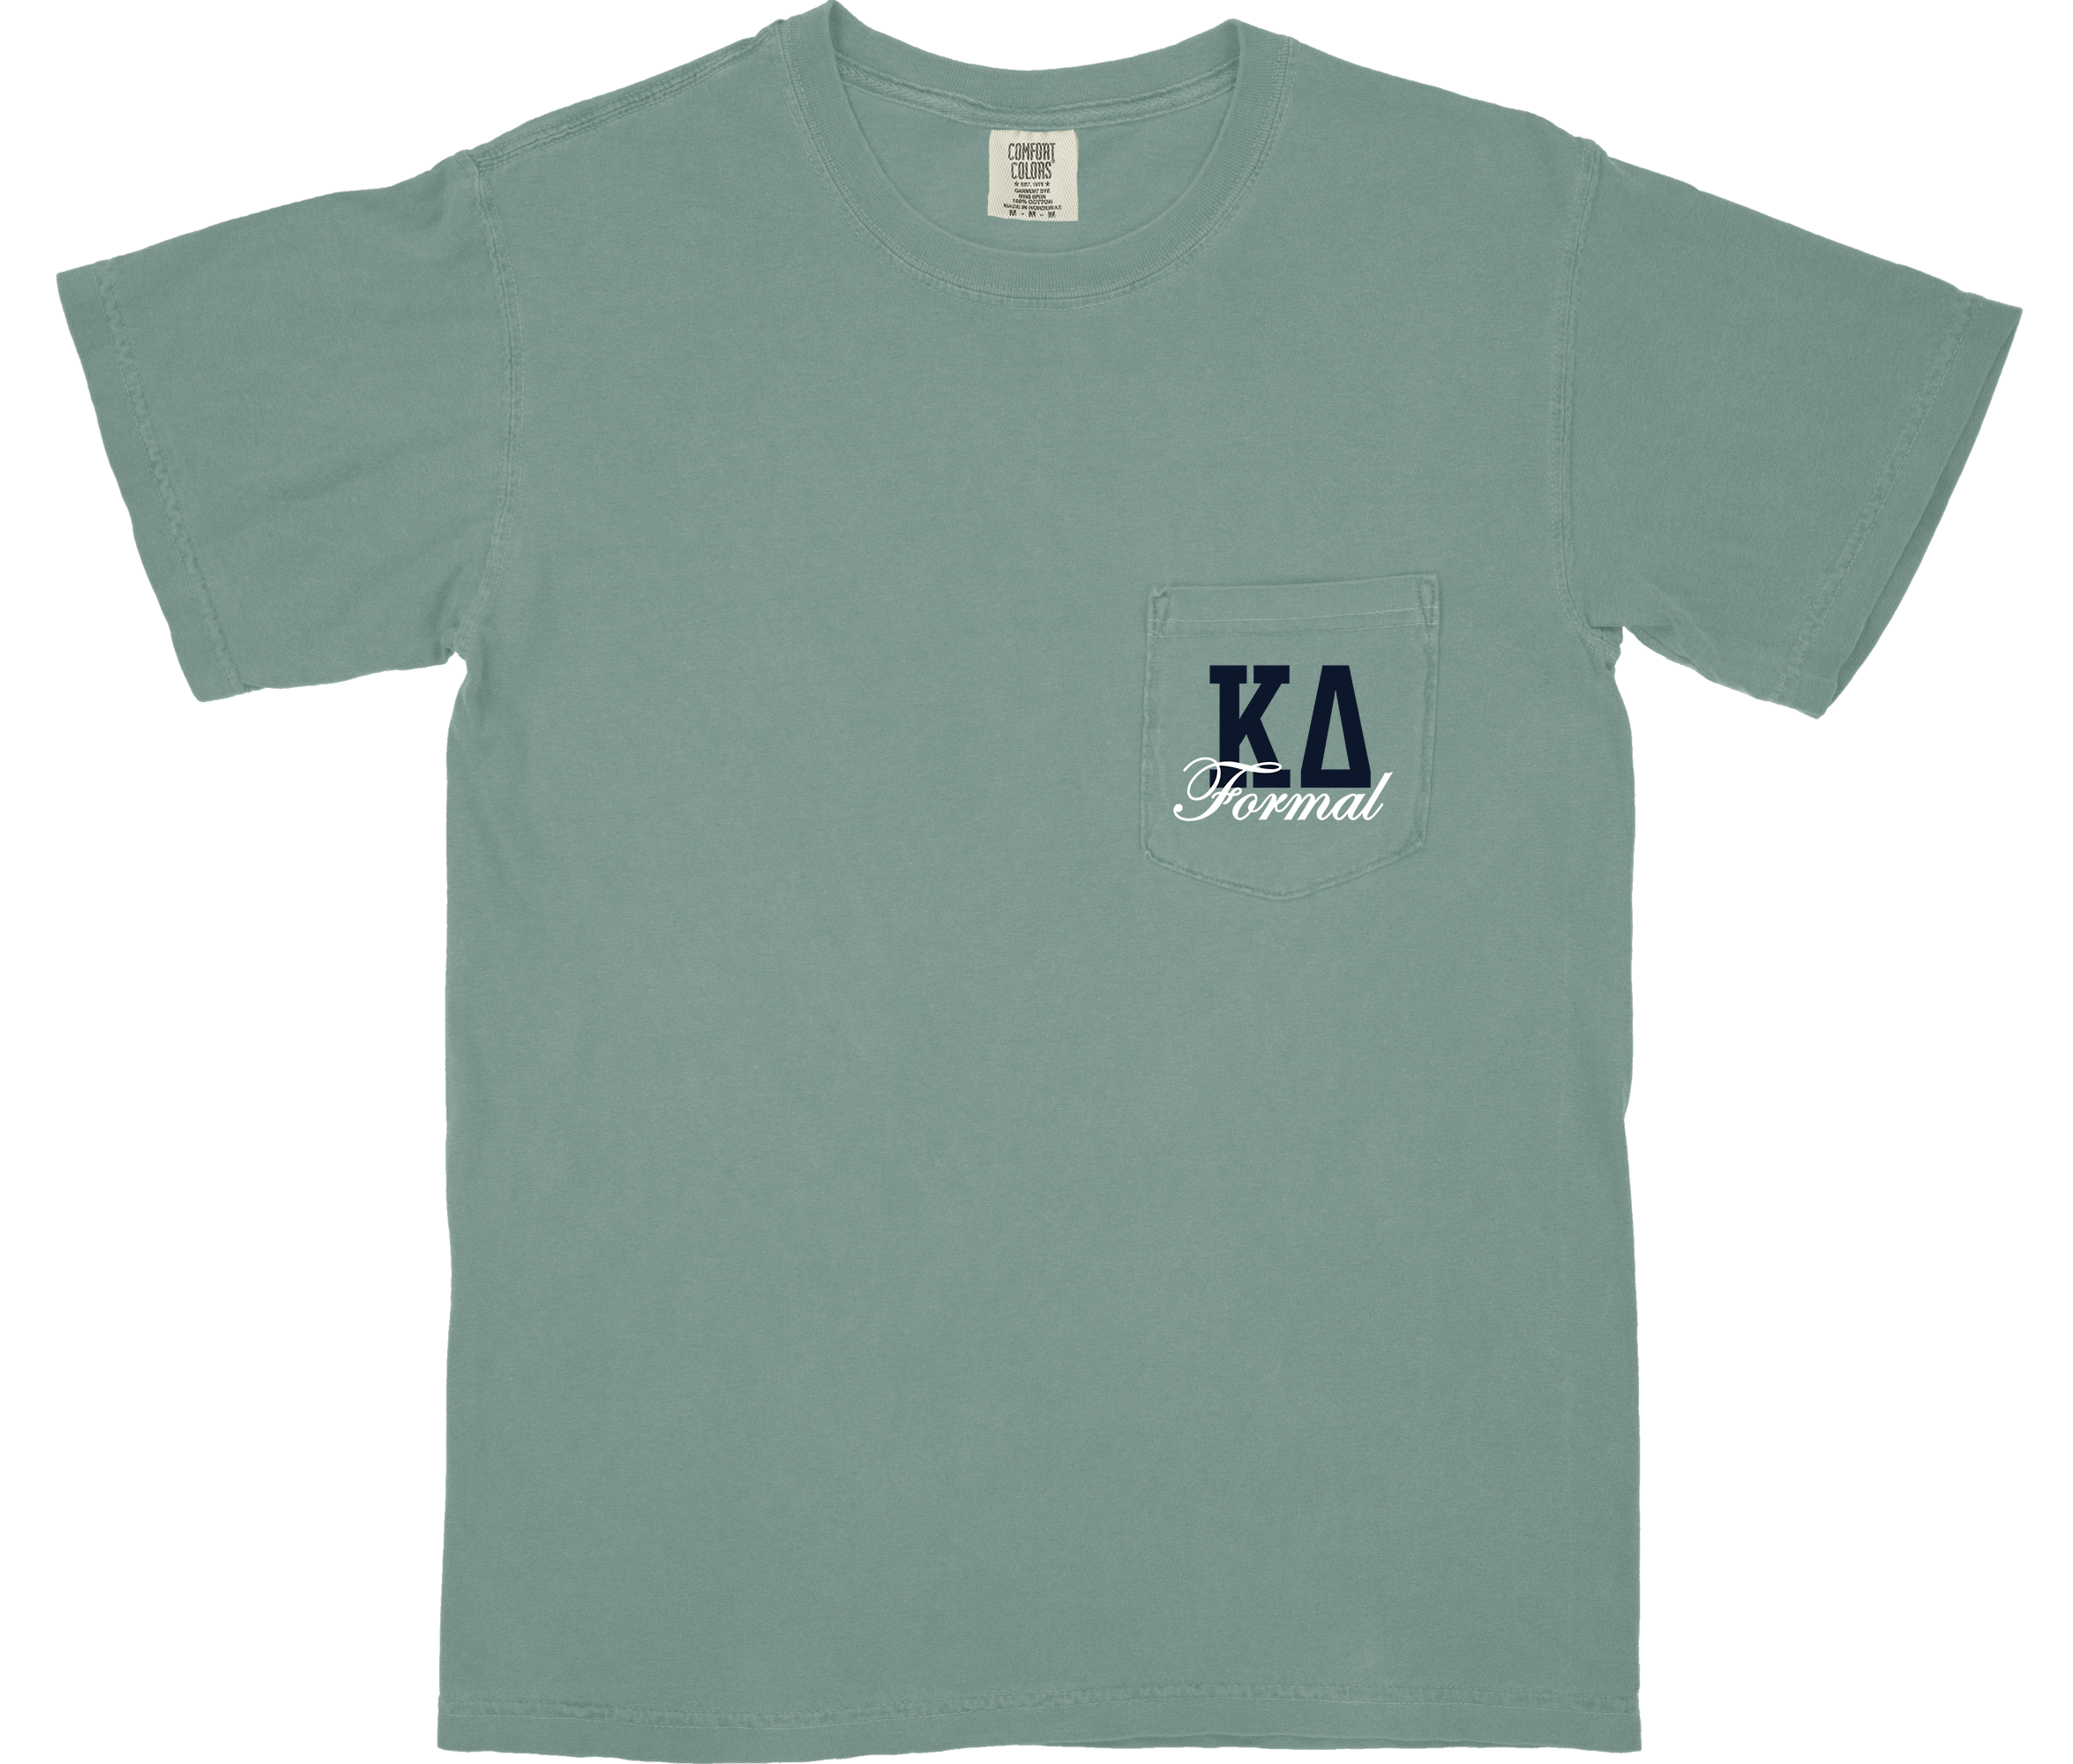 Kappa Delta Spring Formal Shirt